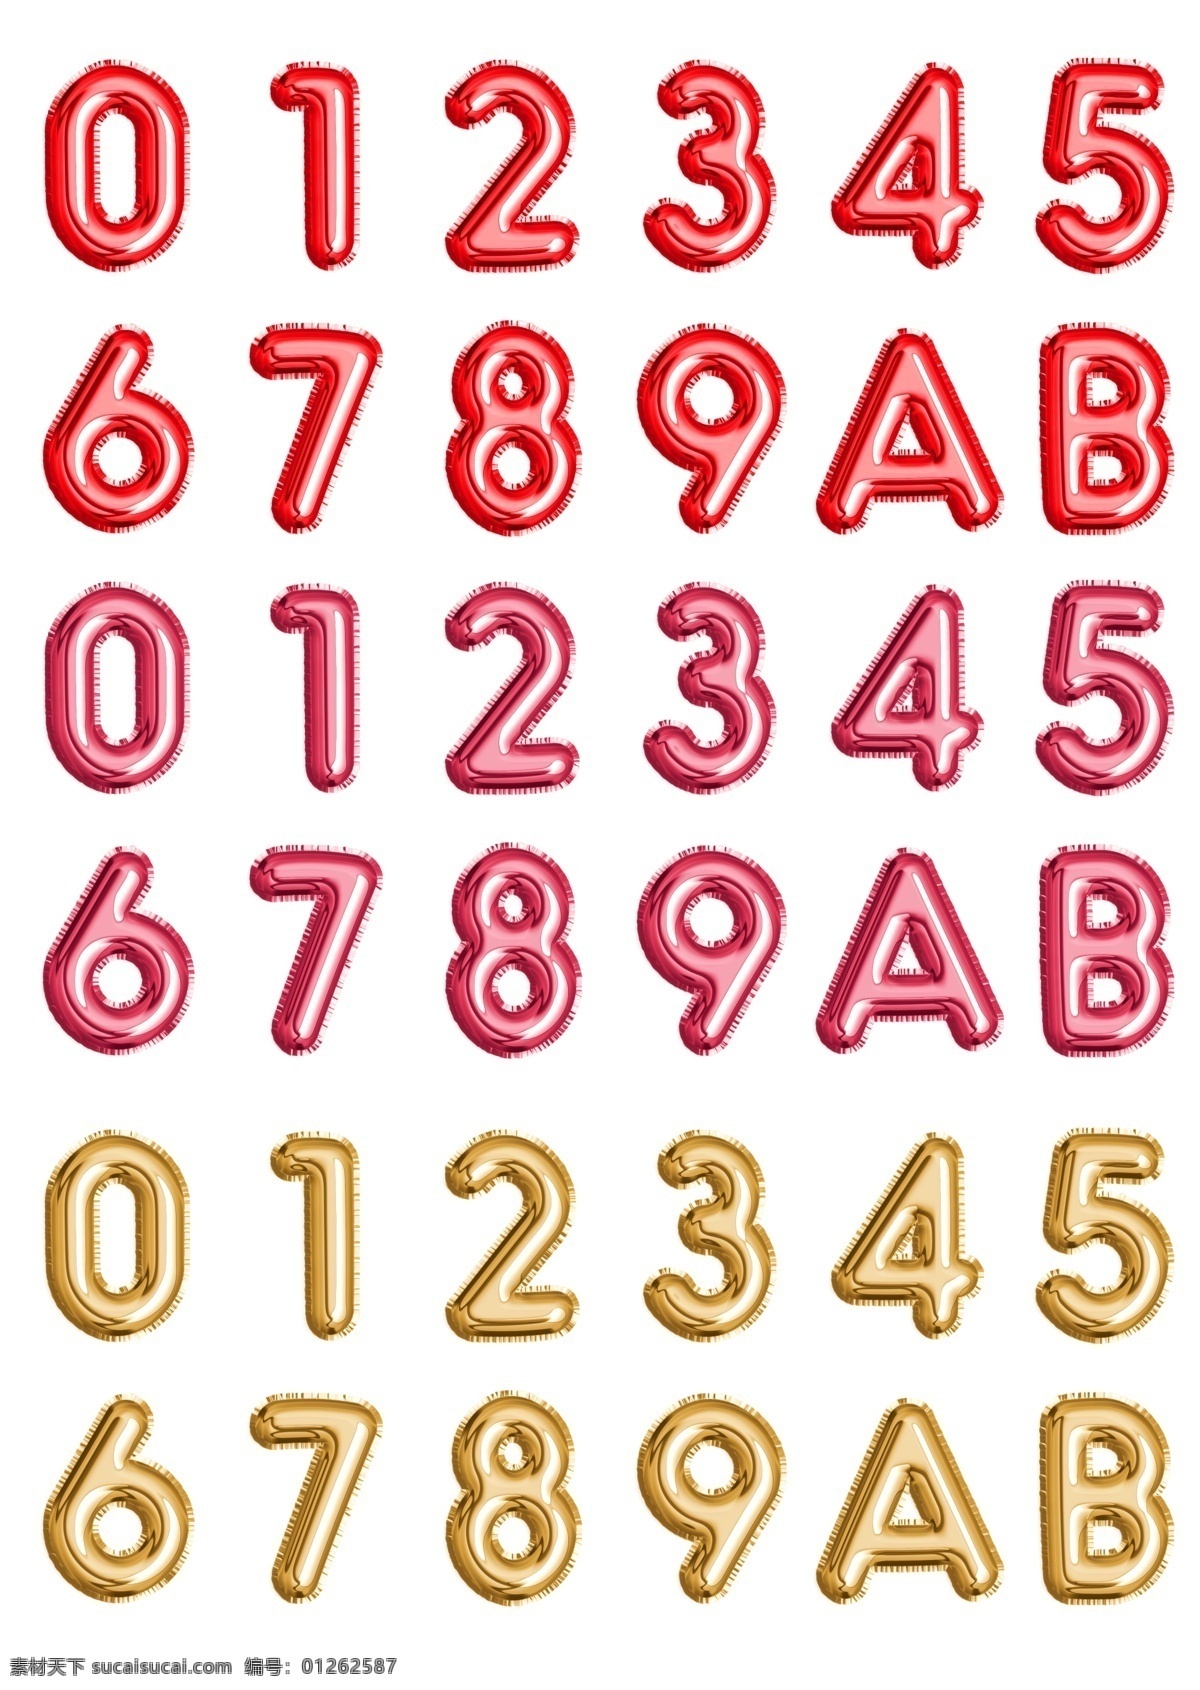 数字图片 数字 序号 气球数字 立体数字 红色数字 粉色数字 金色数字